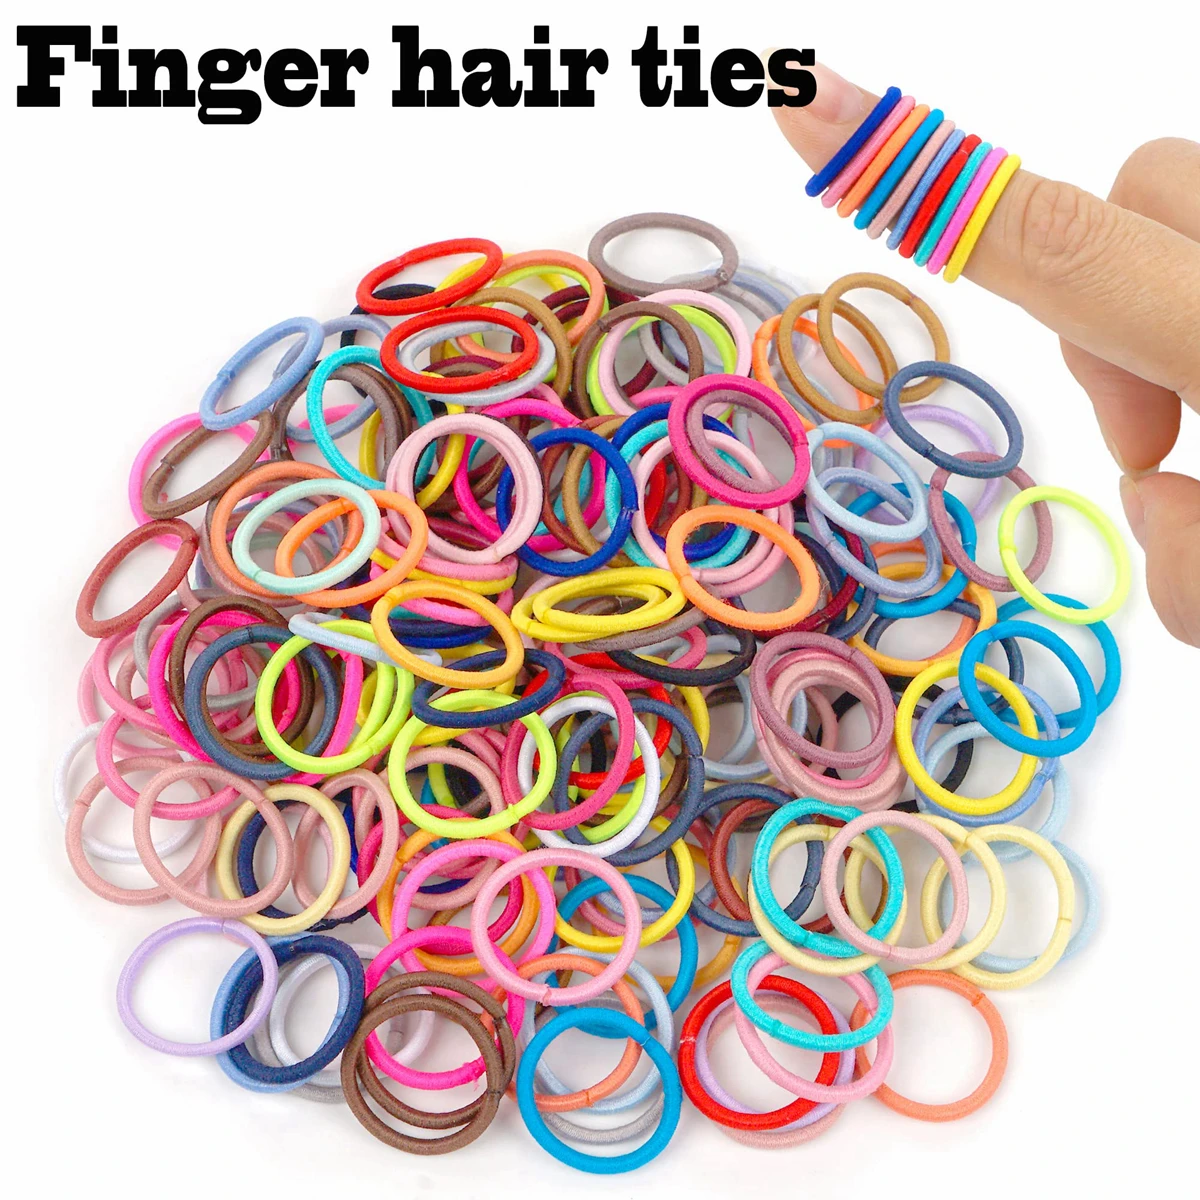 100ks děťátko vlasy kravaty, 36 multicolors 2cm v průměr ne crease prst guma vlasy elasťáky, malý hubený vlasy culík držáky hai